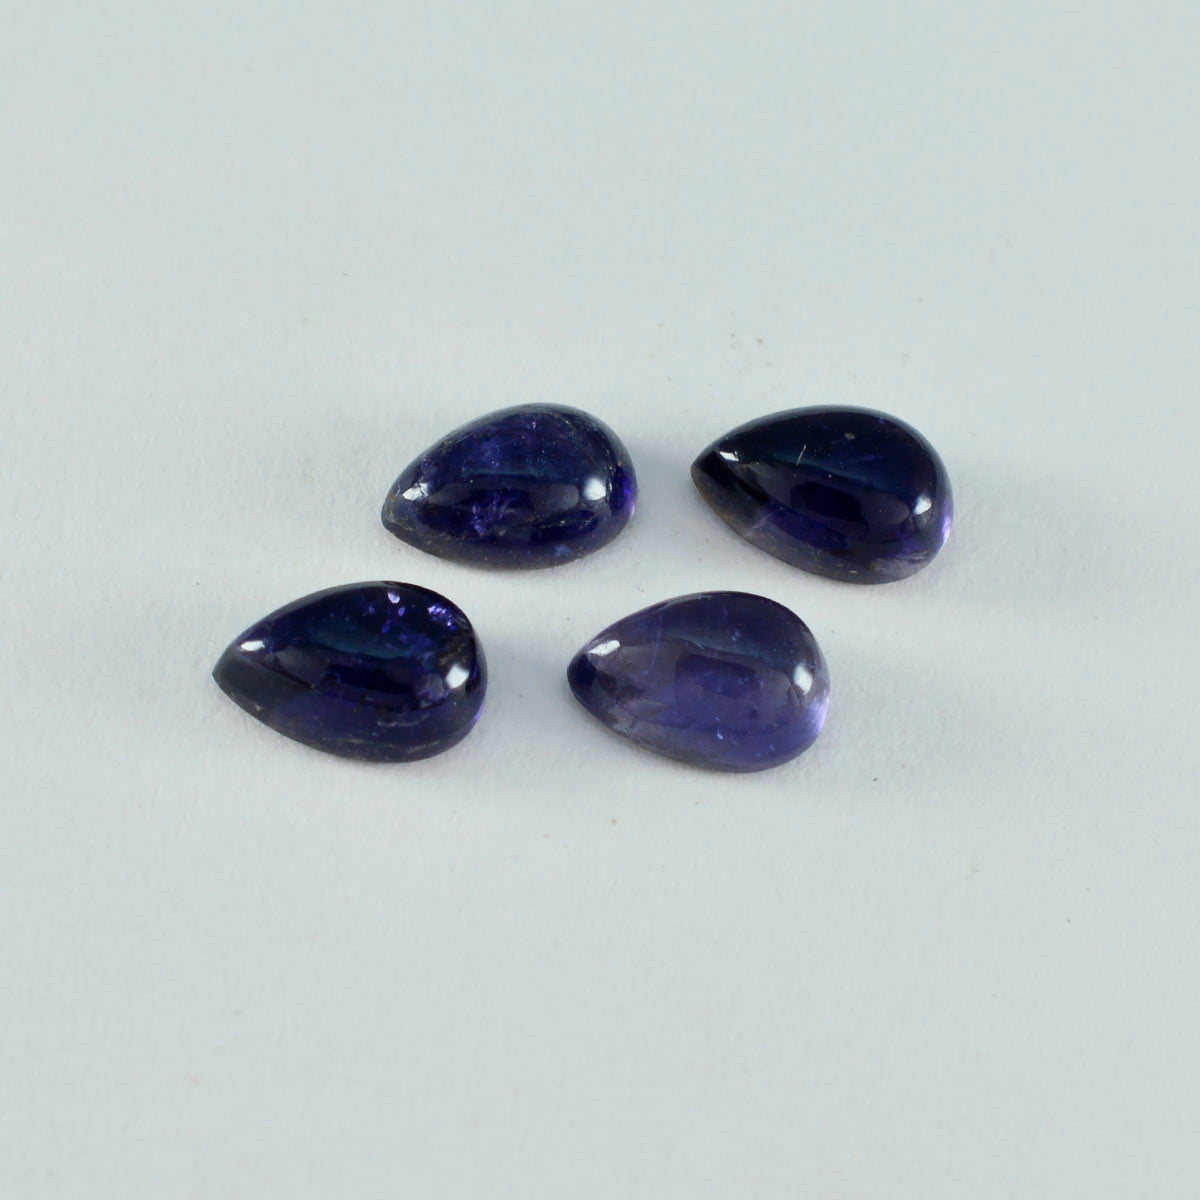 Riyogems 1 Stück blauer Iolith-Cabochon, 6 x 9 mm, Birnenform, süßer Qualitätsedelstein